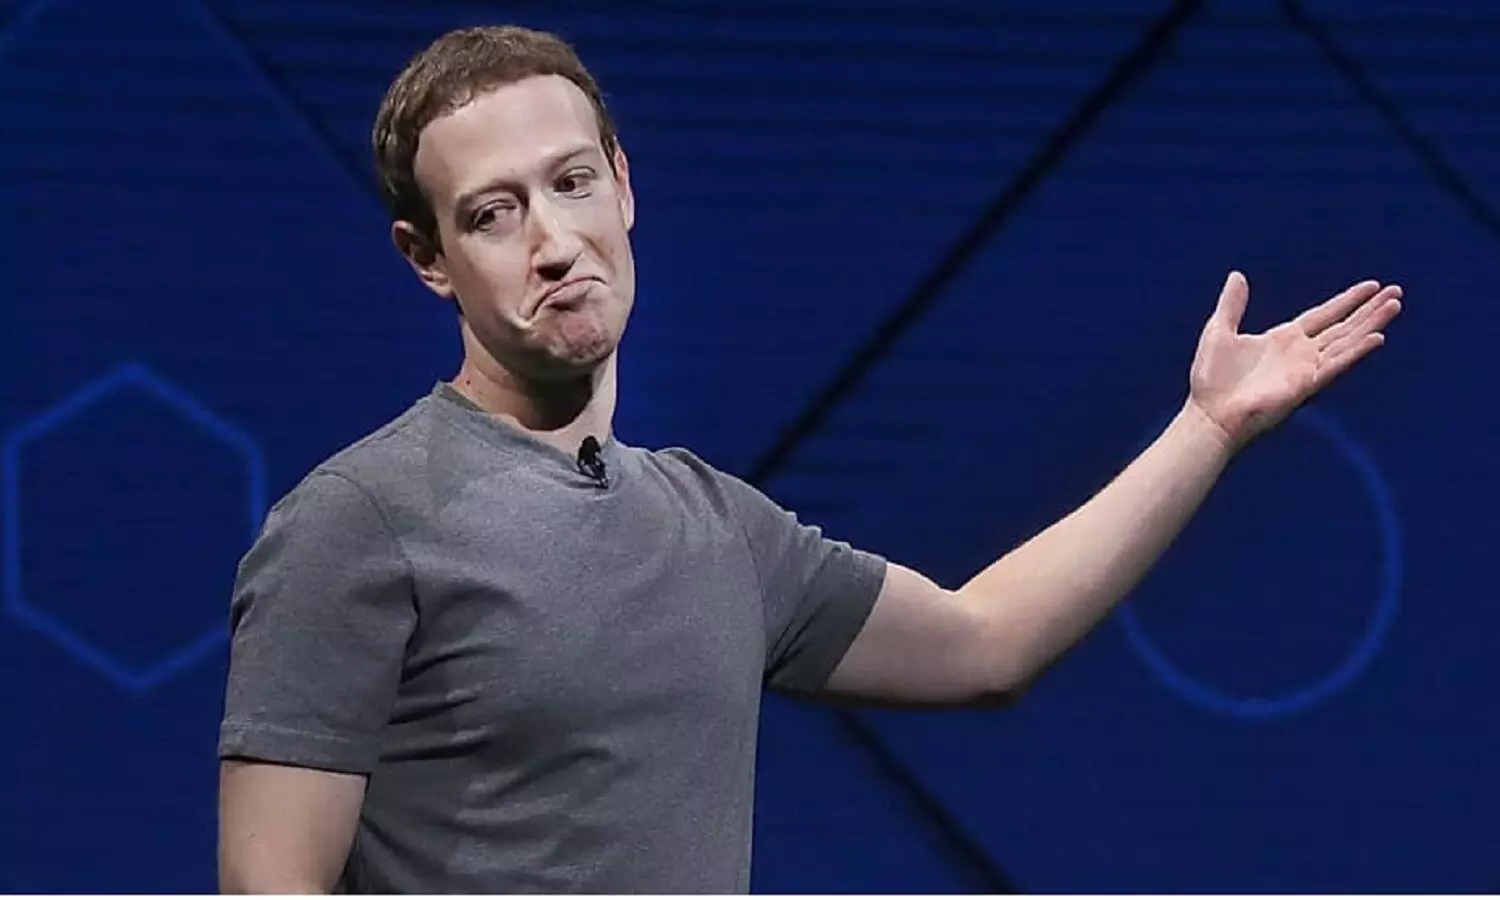 Facebook Followers Loss: Mark Zuckerberg के फेसबुक फॉलोवर्स 11.9 करोड़ से घटकर सिर्फ 10 हज़ार हो गए